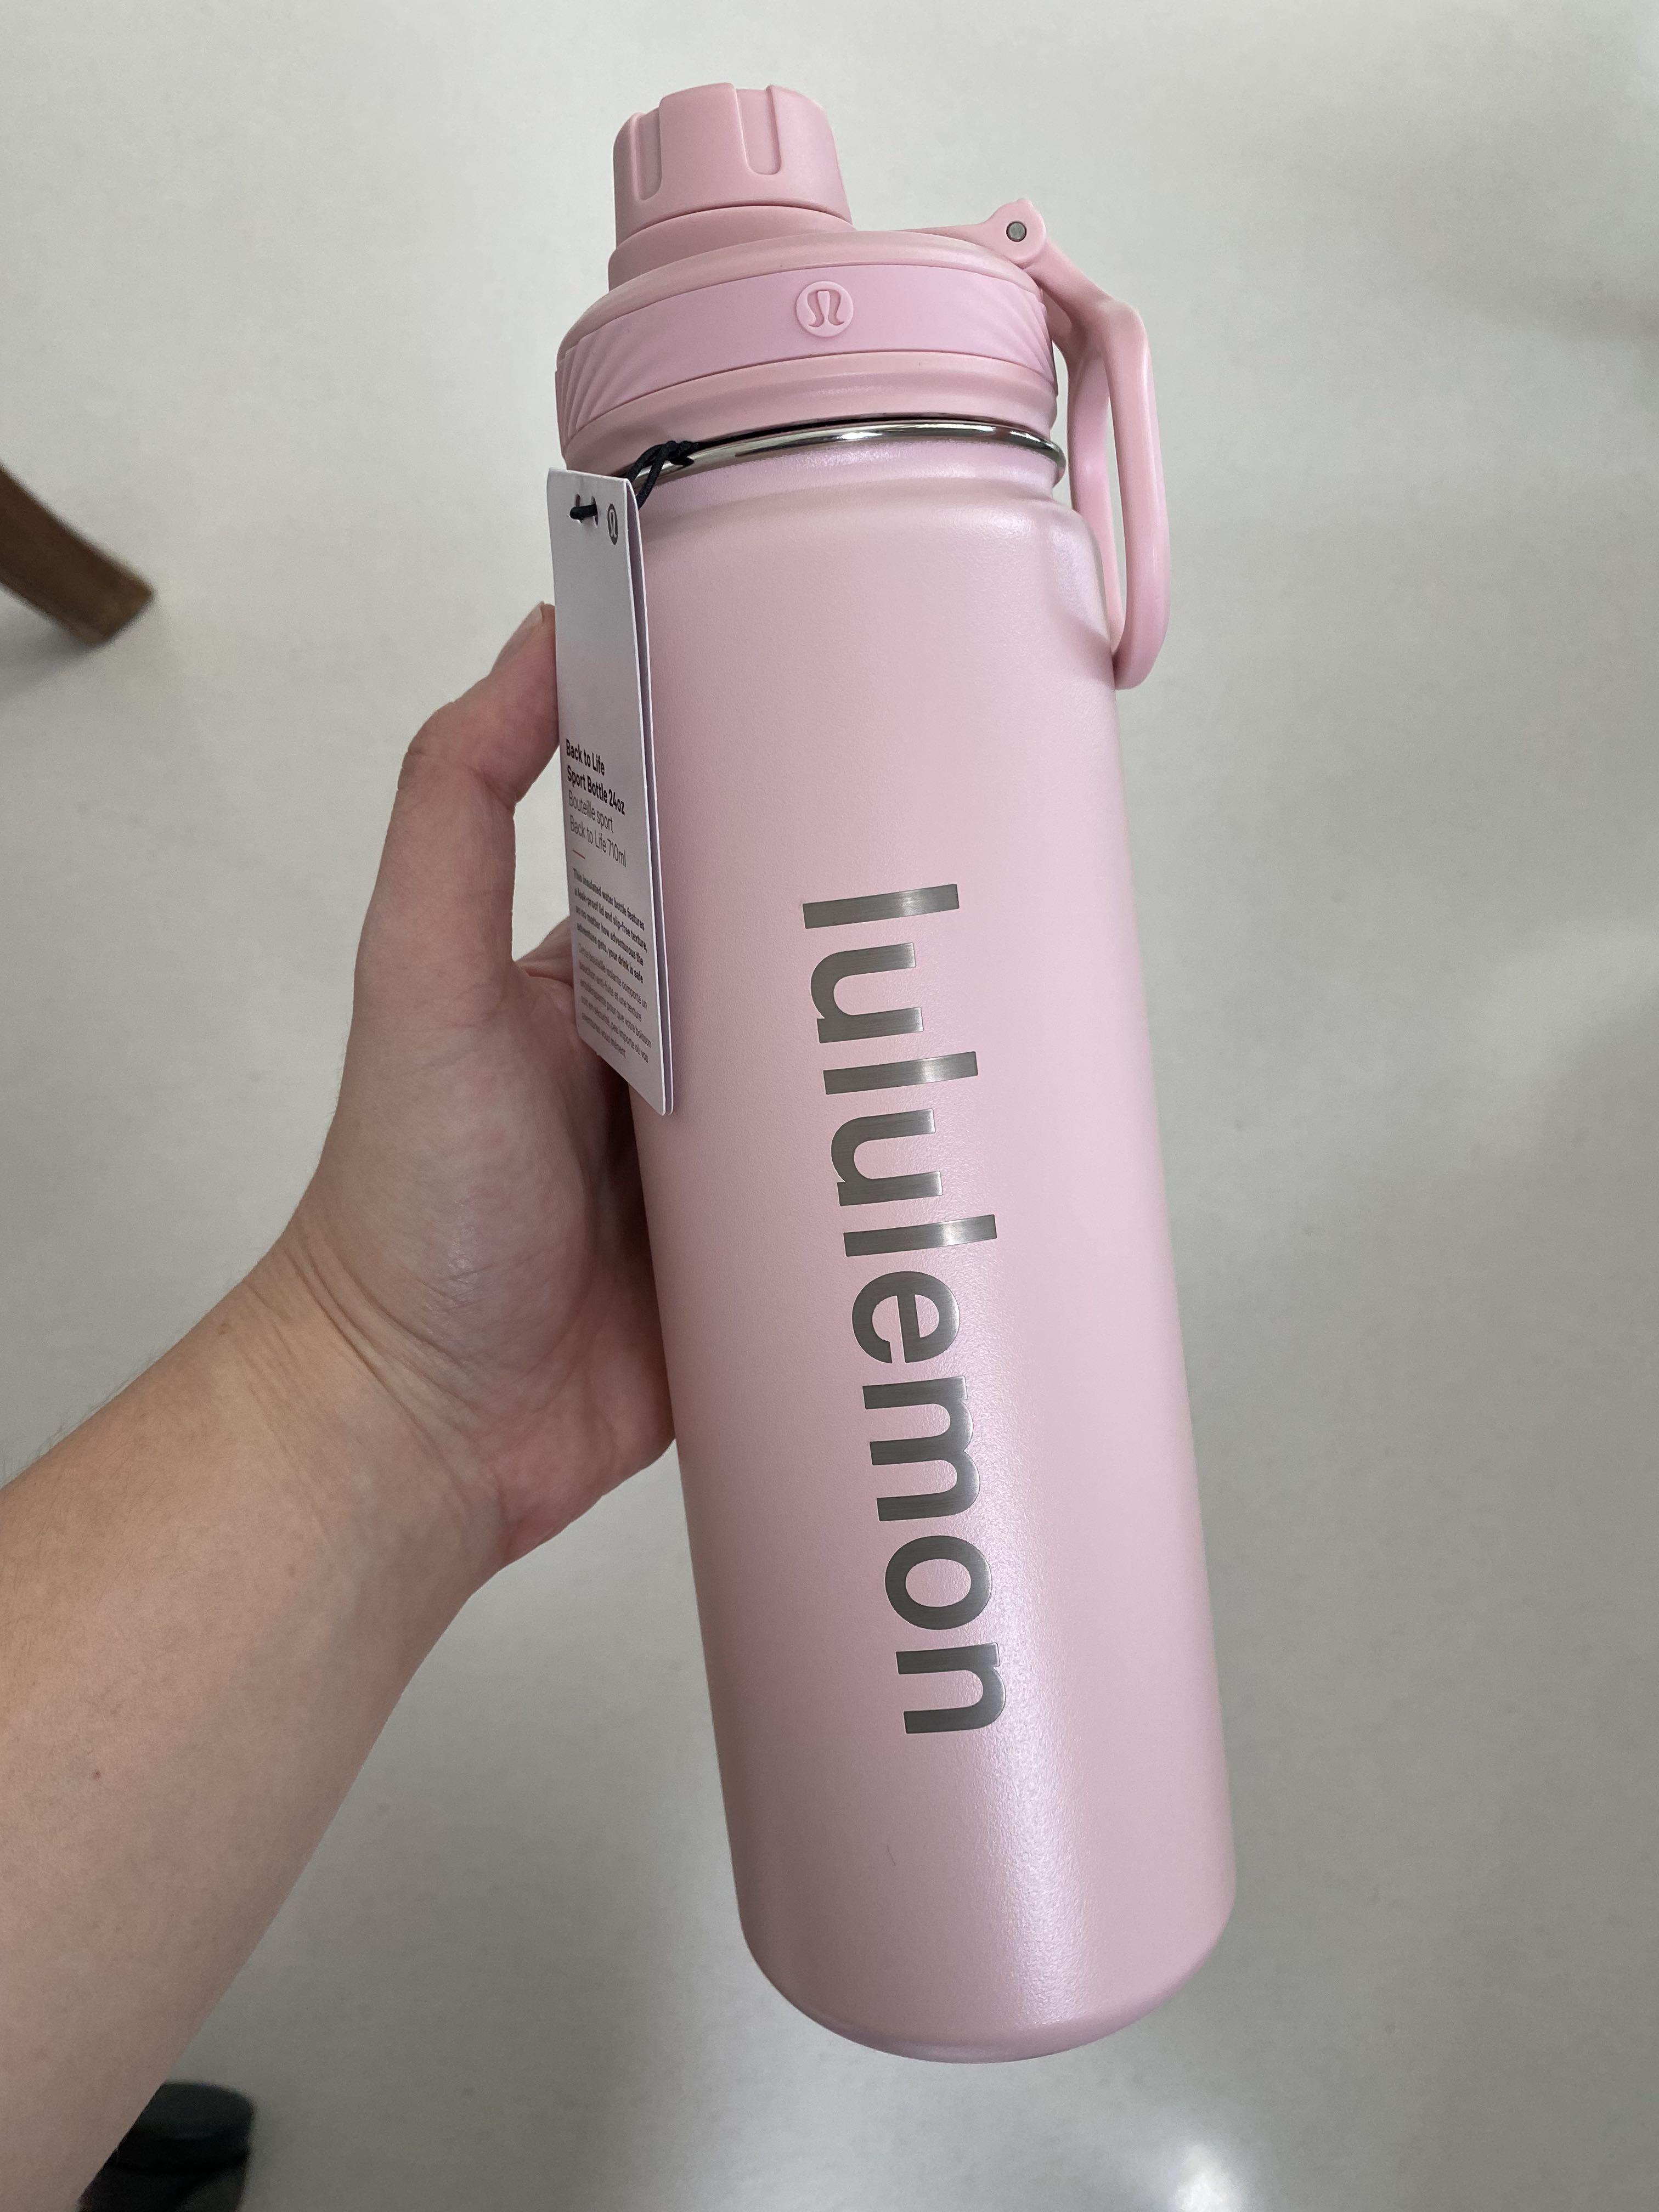 Review LULULEMON Back To Life Sport Bottle 24 oz Water Bottle Pink Mist 